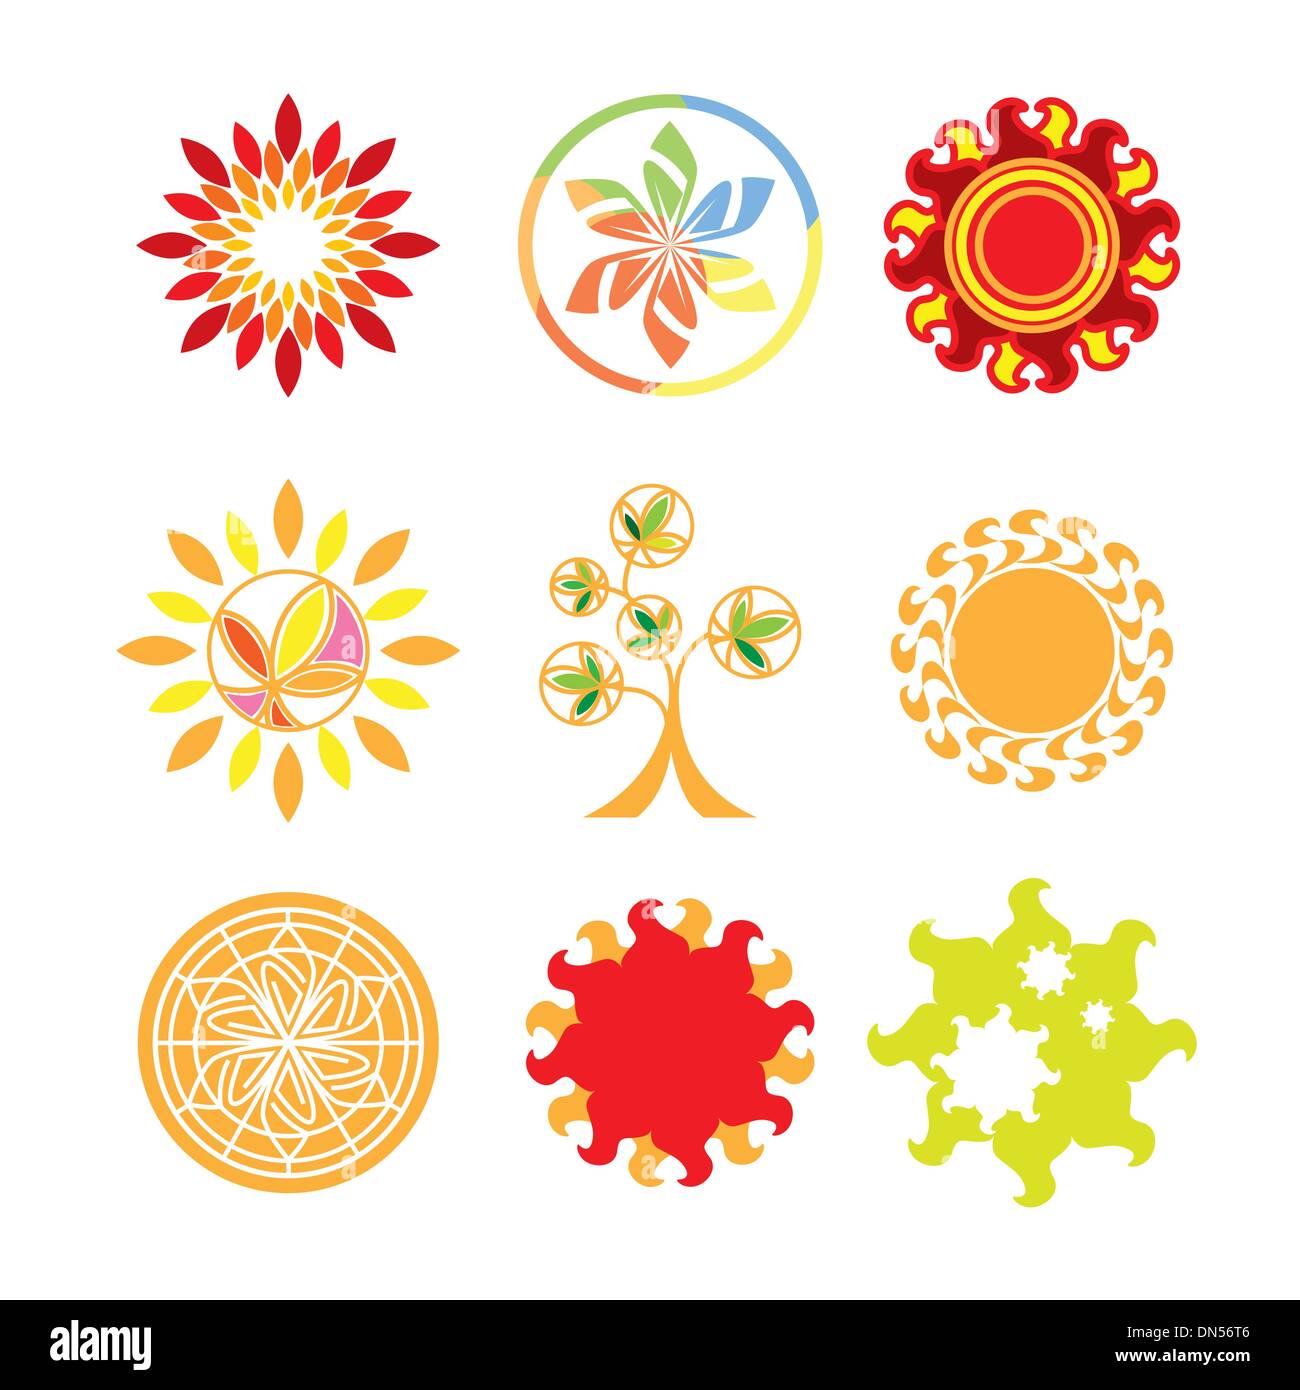 Kollektion von Vektor-Logos in Form von der Sonne Stock Vektor